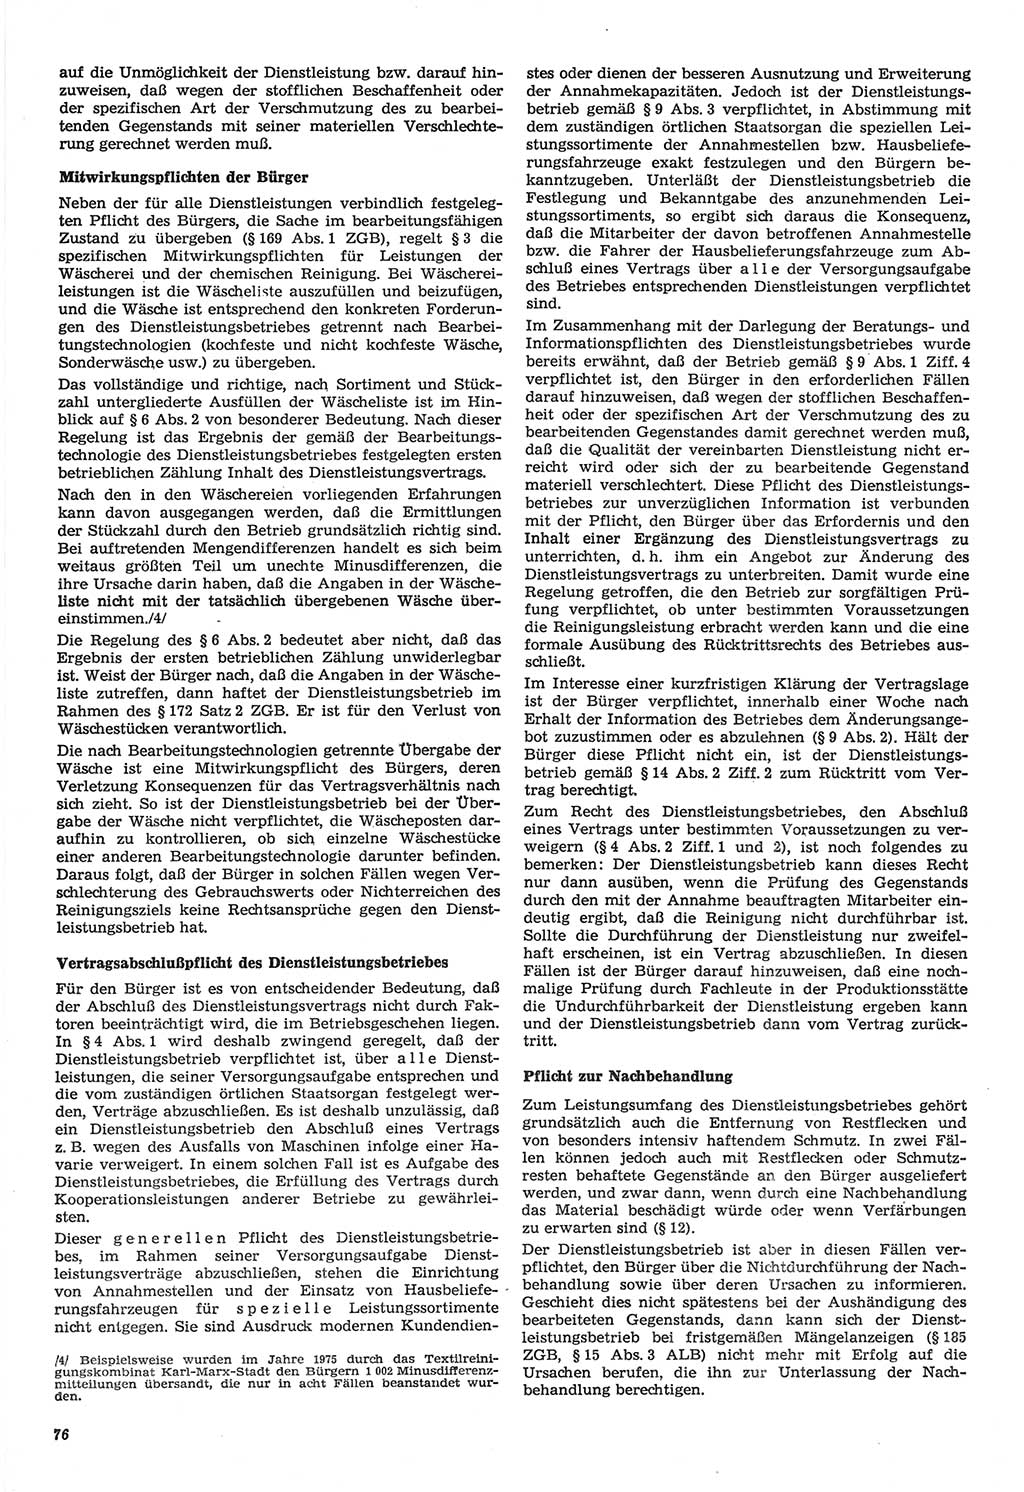 Neue Justiz (NJ), Zeitschrift für Recht und Rechtswissenschaft-Zeitschrift, sozialistisches Recht und Gesetzlichkeit, 31. Jahrgang 1977, Seite 76 (NJ DDR 1977, S. 76)